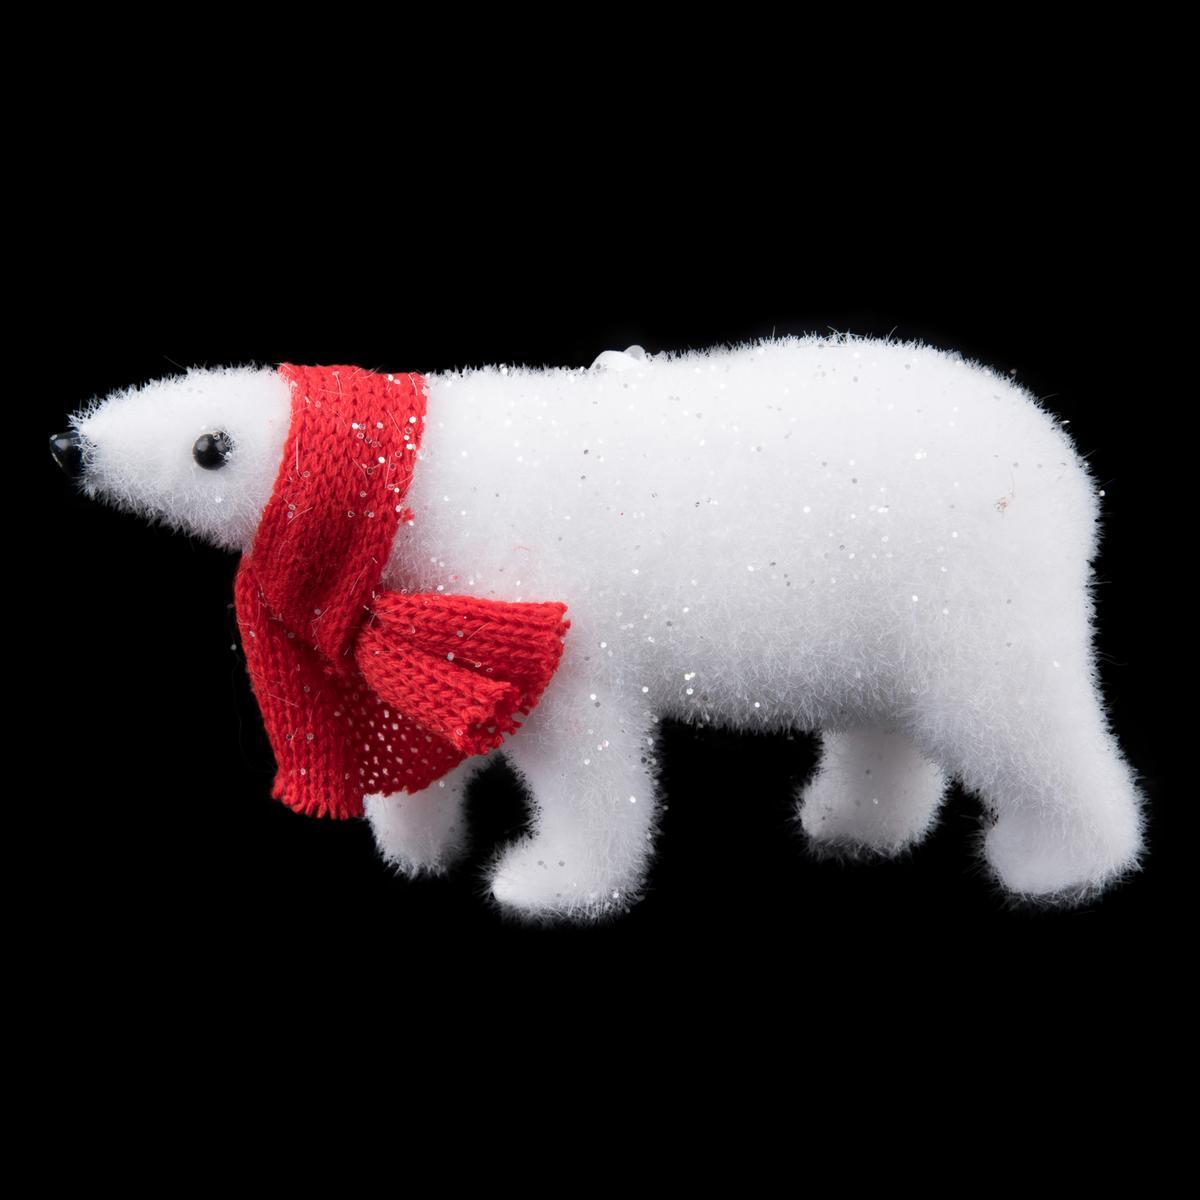 Suspension ours blanc debout - 14 x 4 x H 8 cm - Rouge, blanc